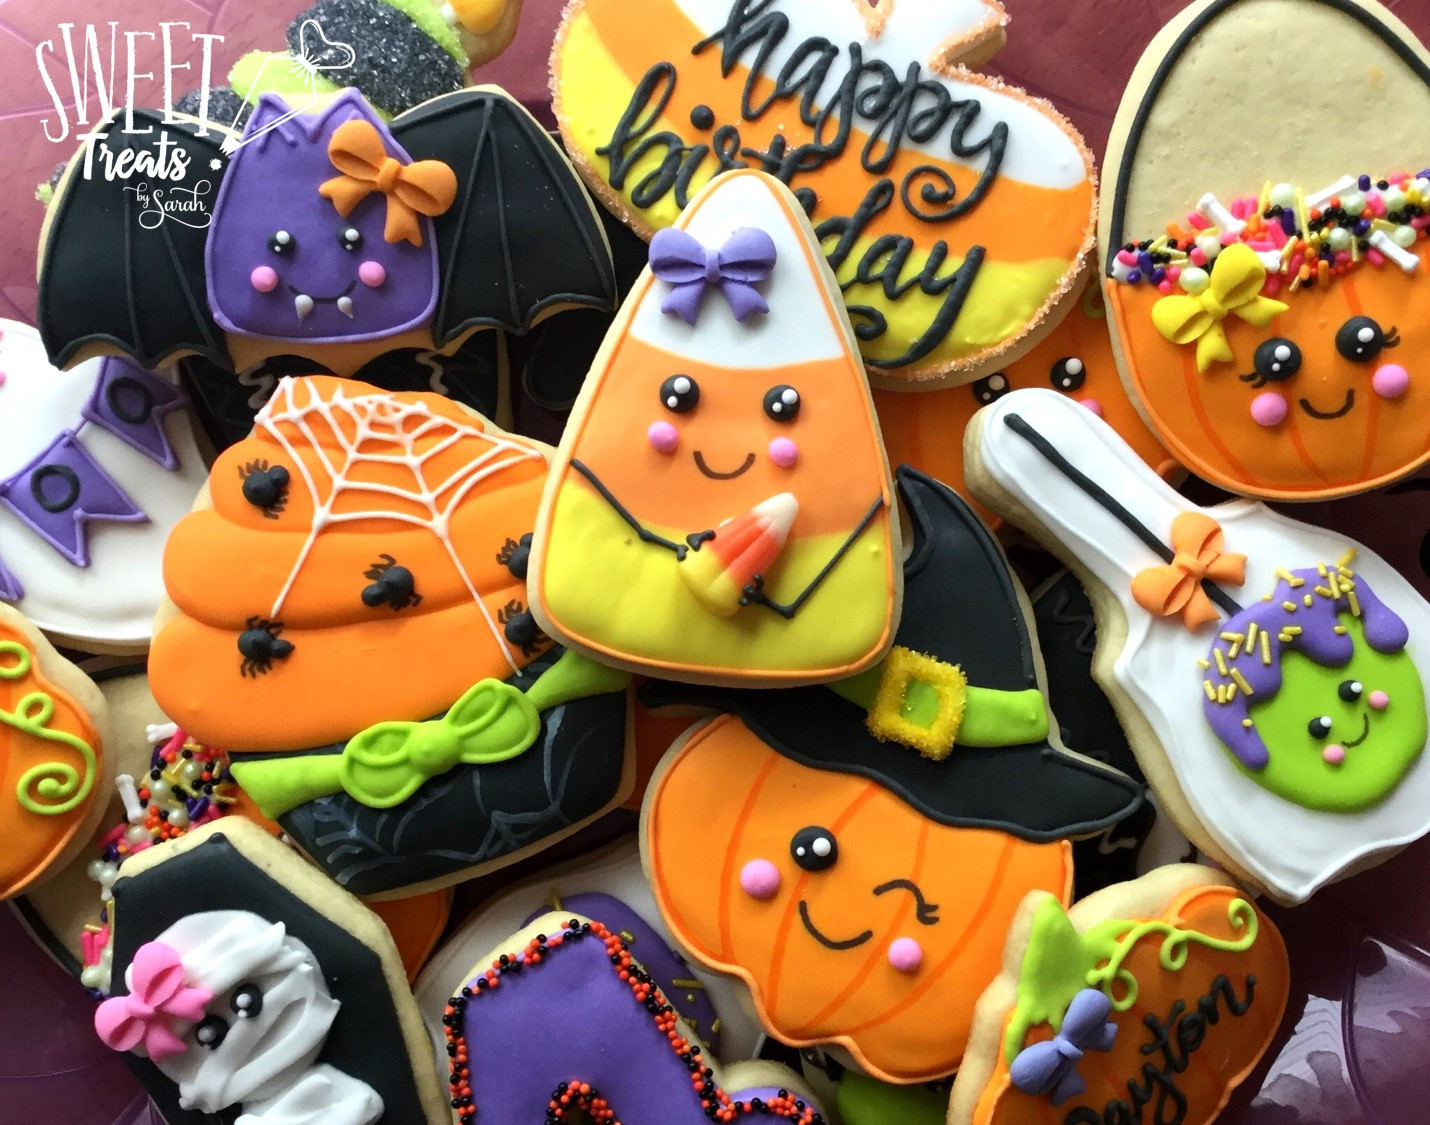 Cute Halloween Cookies
 Sweet Treats by Sarah Halloween Cookies 2017